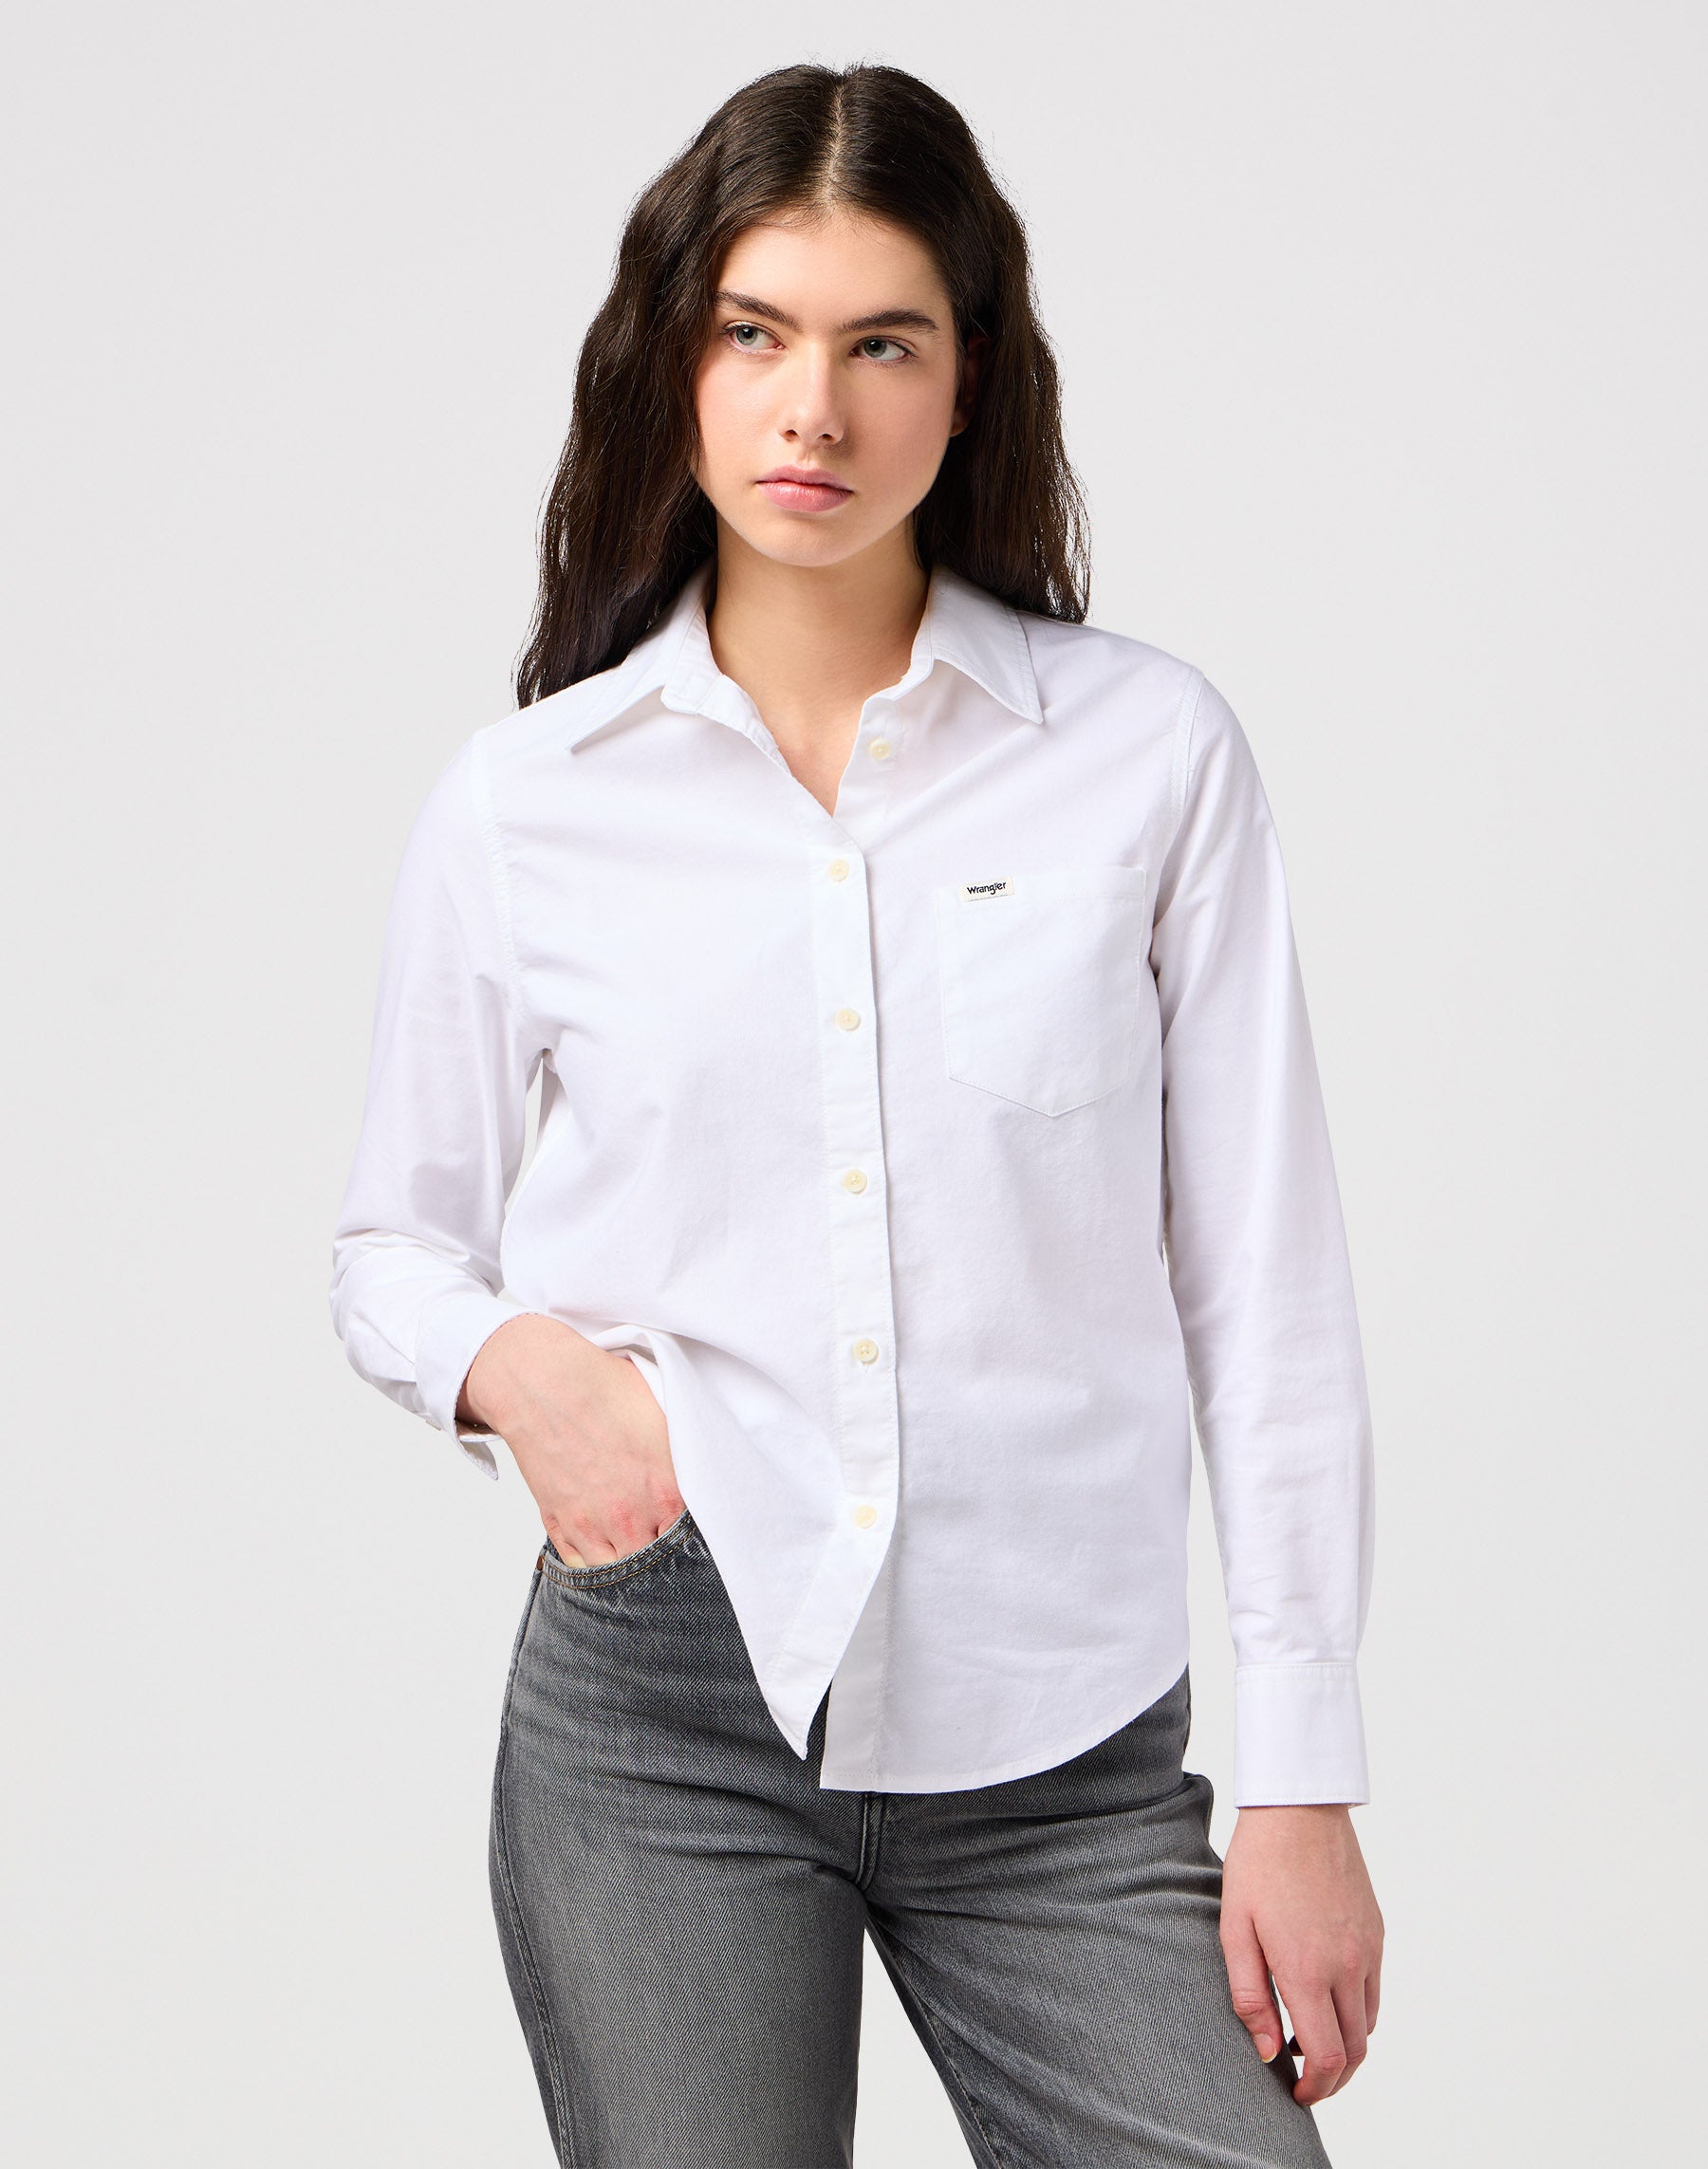 One Pocket Shirt in White Hemden Wrangler   